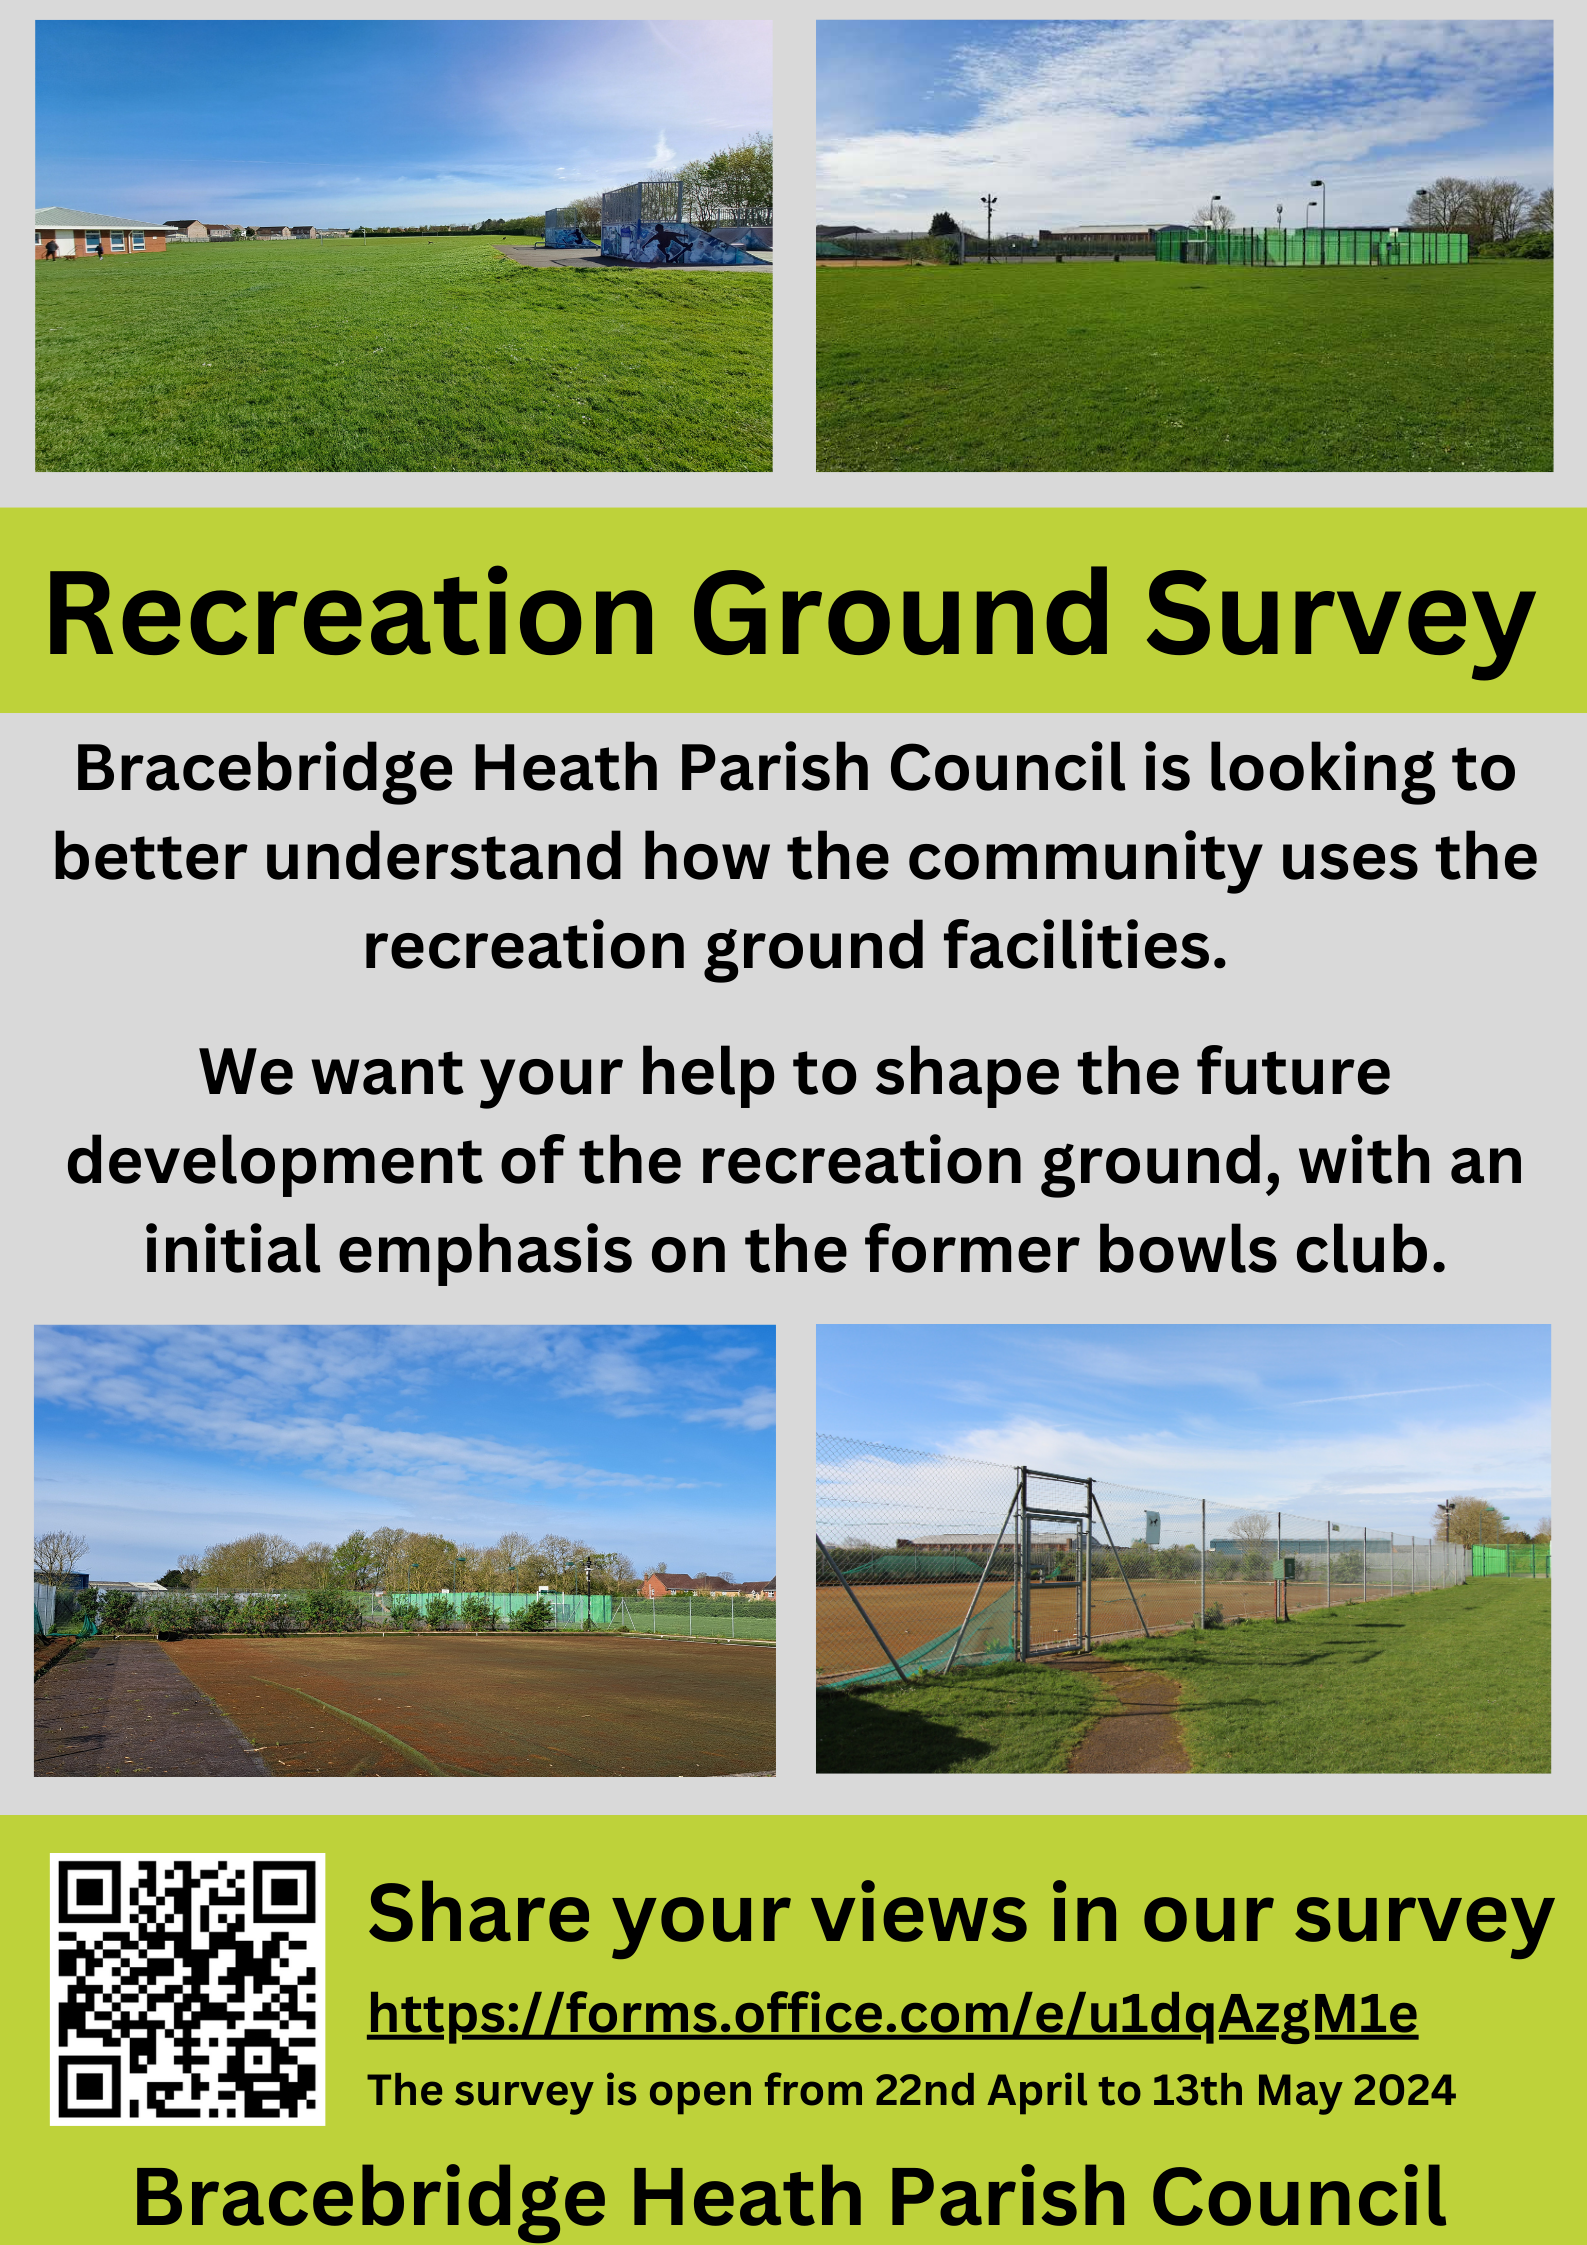 Survey about the recreation ground in bracebridge heath